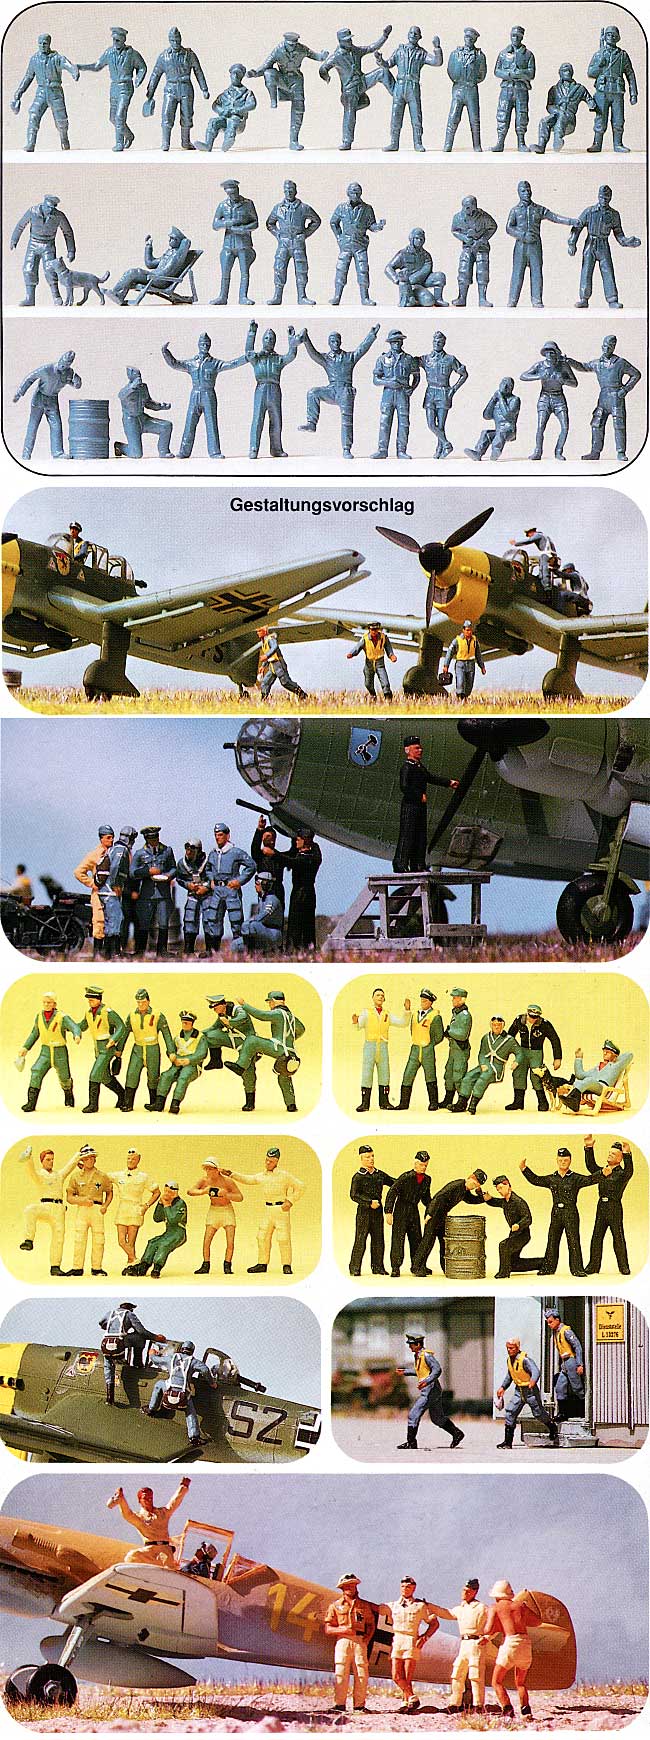 ドイツ空軍パイロット & グランドクルー Vol.3 WW2 プラモデル (プライザー 1/72 精密プラ製フィギュア No.72509) 商品画像_1